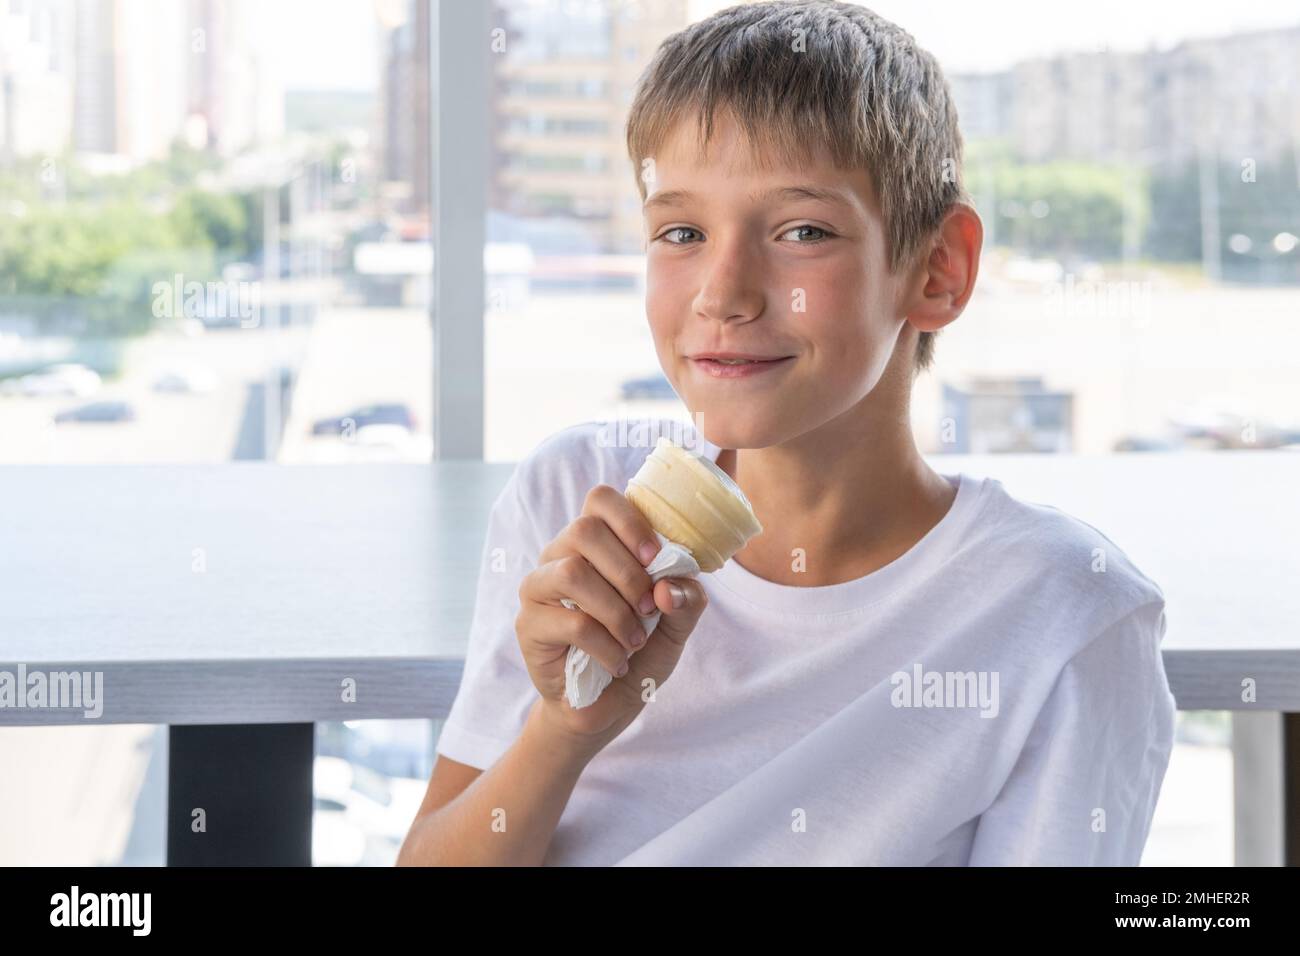 Ein süßer Teenager isst weißes Eis in einem Waffelbecher, sitzt an einem Tisch am Fenster in einem Café. Unscharfer Hintergrund. Sommertag. Ein Kind genießt die Ice Stockfoto